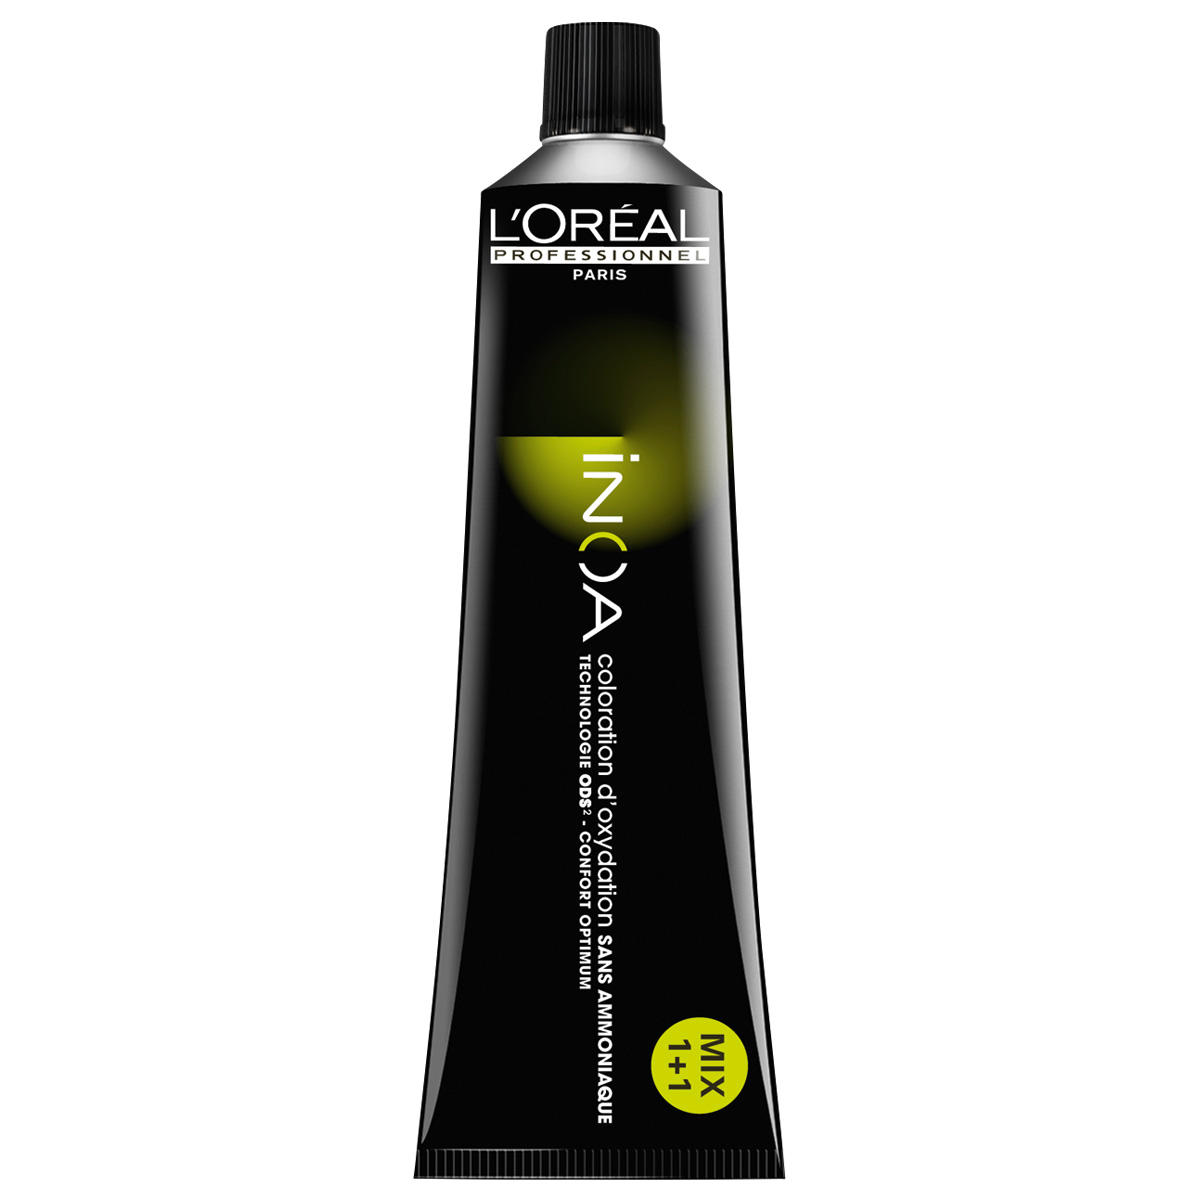 L'Oréal Professionnel Paris Coloration 9,31 Rubio muy claro ceniza dorada, tubo 60 ml